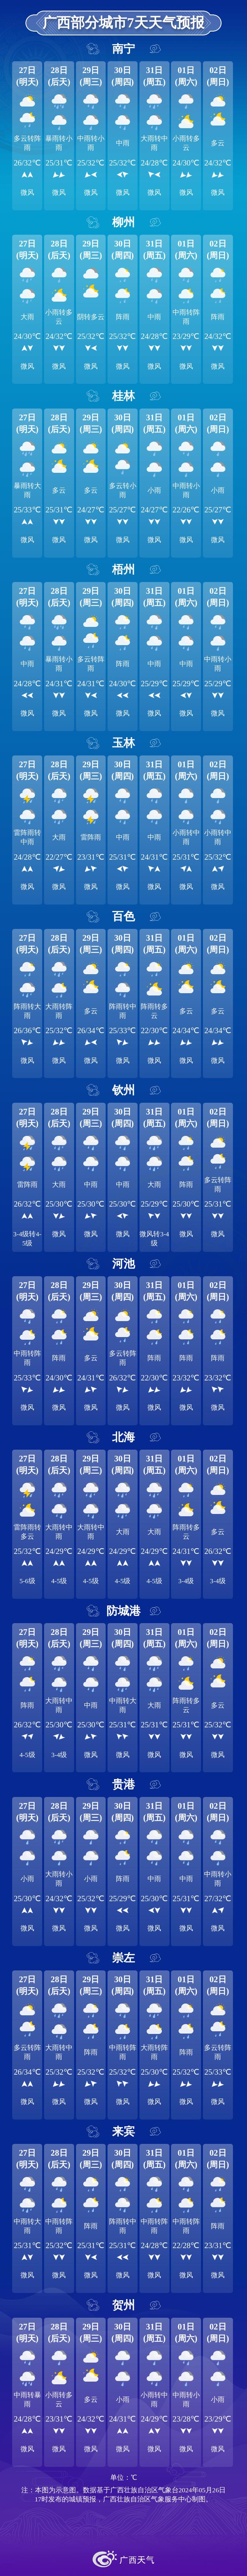 广西部分城市7天天气预报北部湾海面:未来三天,雷雨时有8级以上雷暴